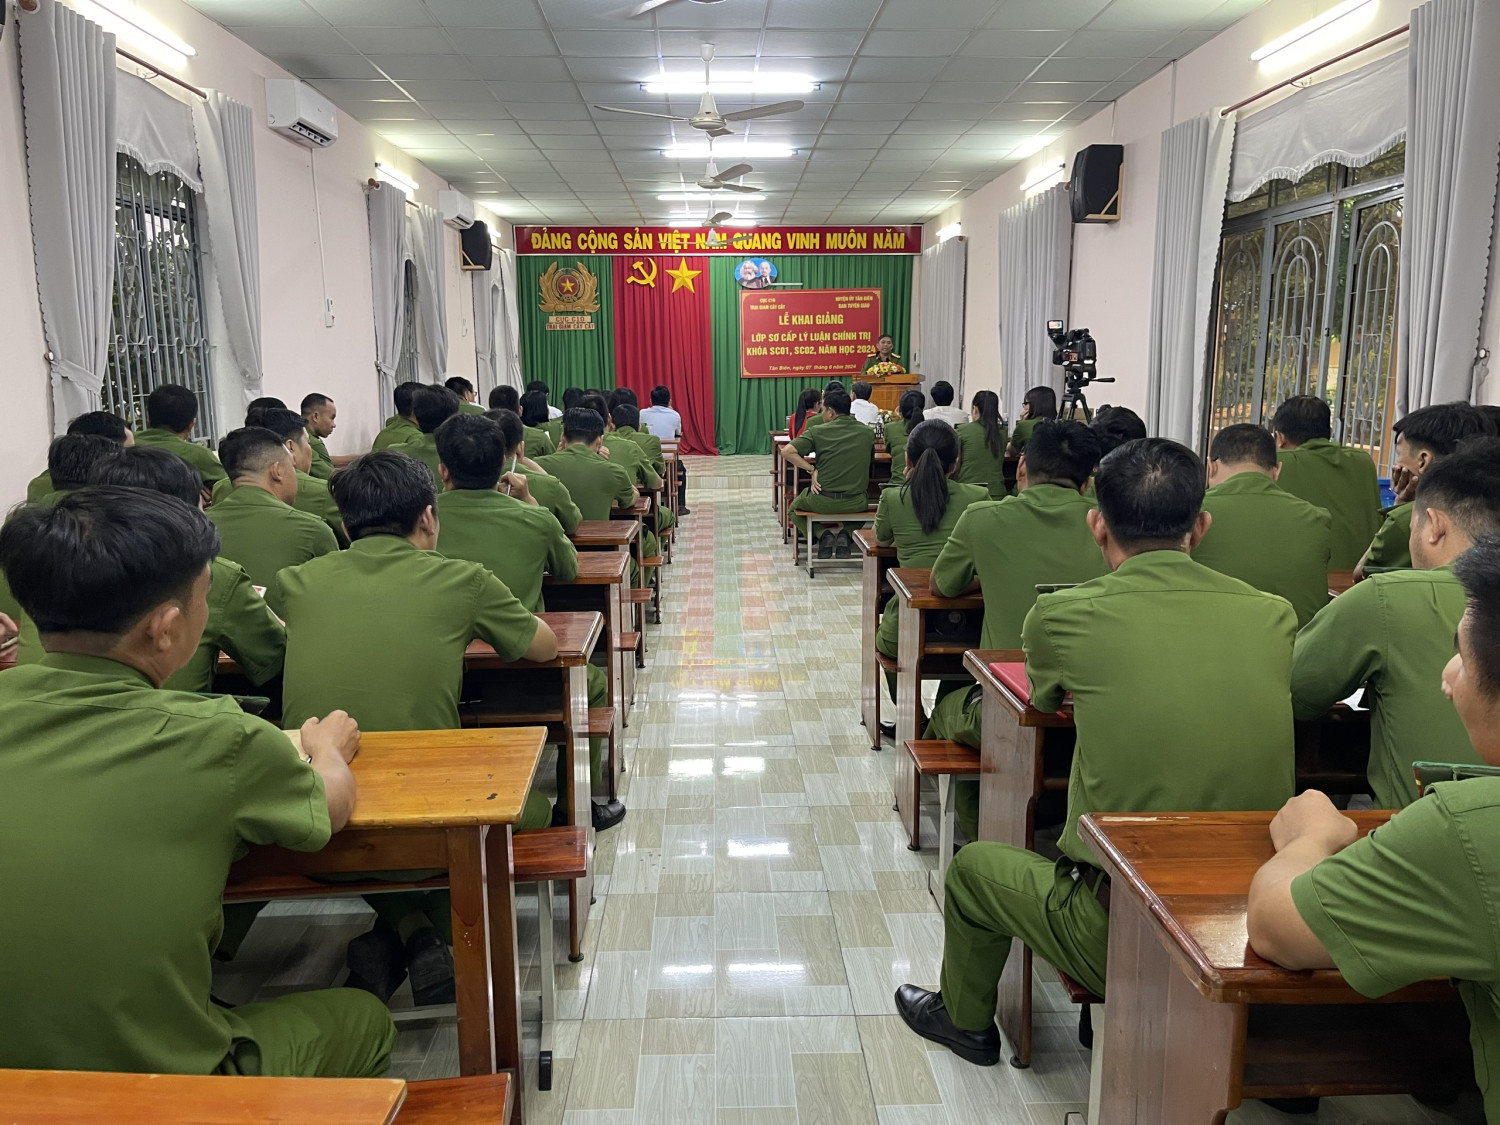 Tân Biên Khai giảng lớp sơ cấp Lý luận Chính trị tại Trại giam Cây Cầy